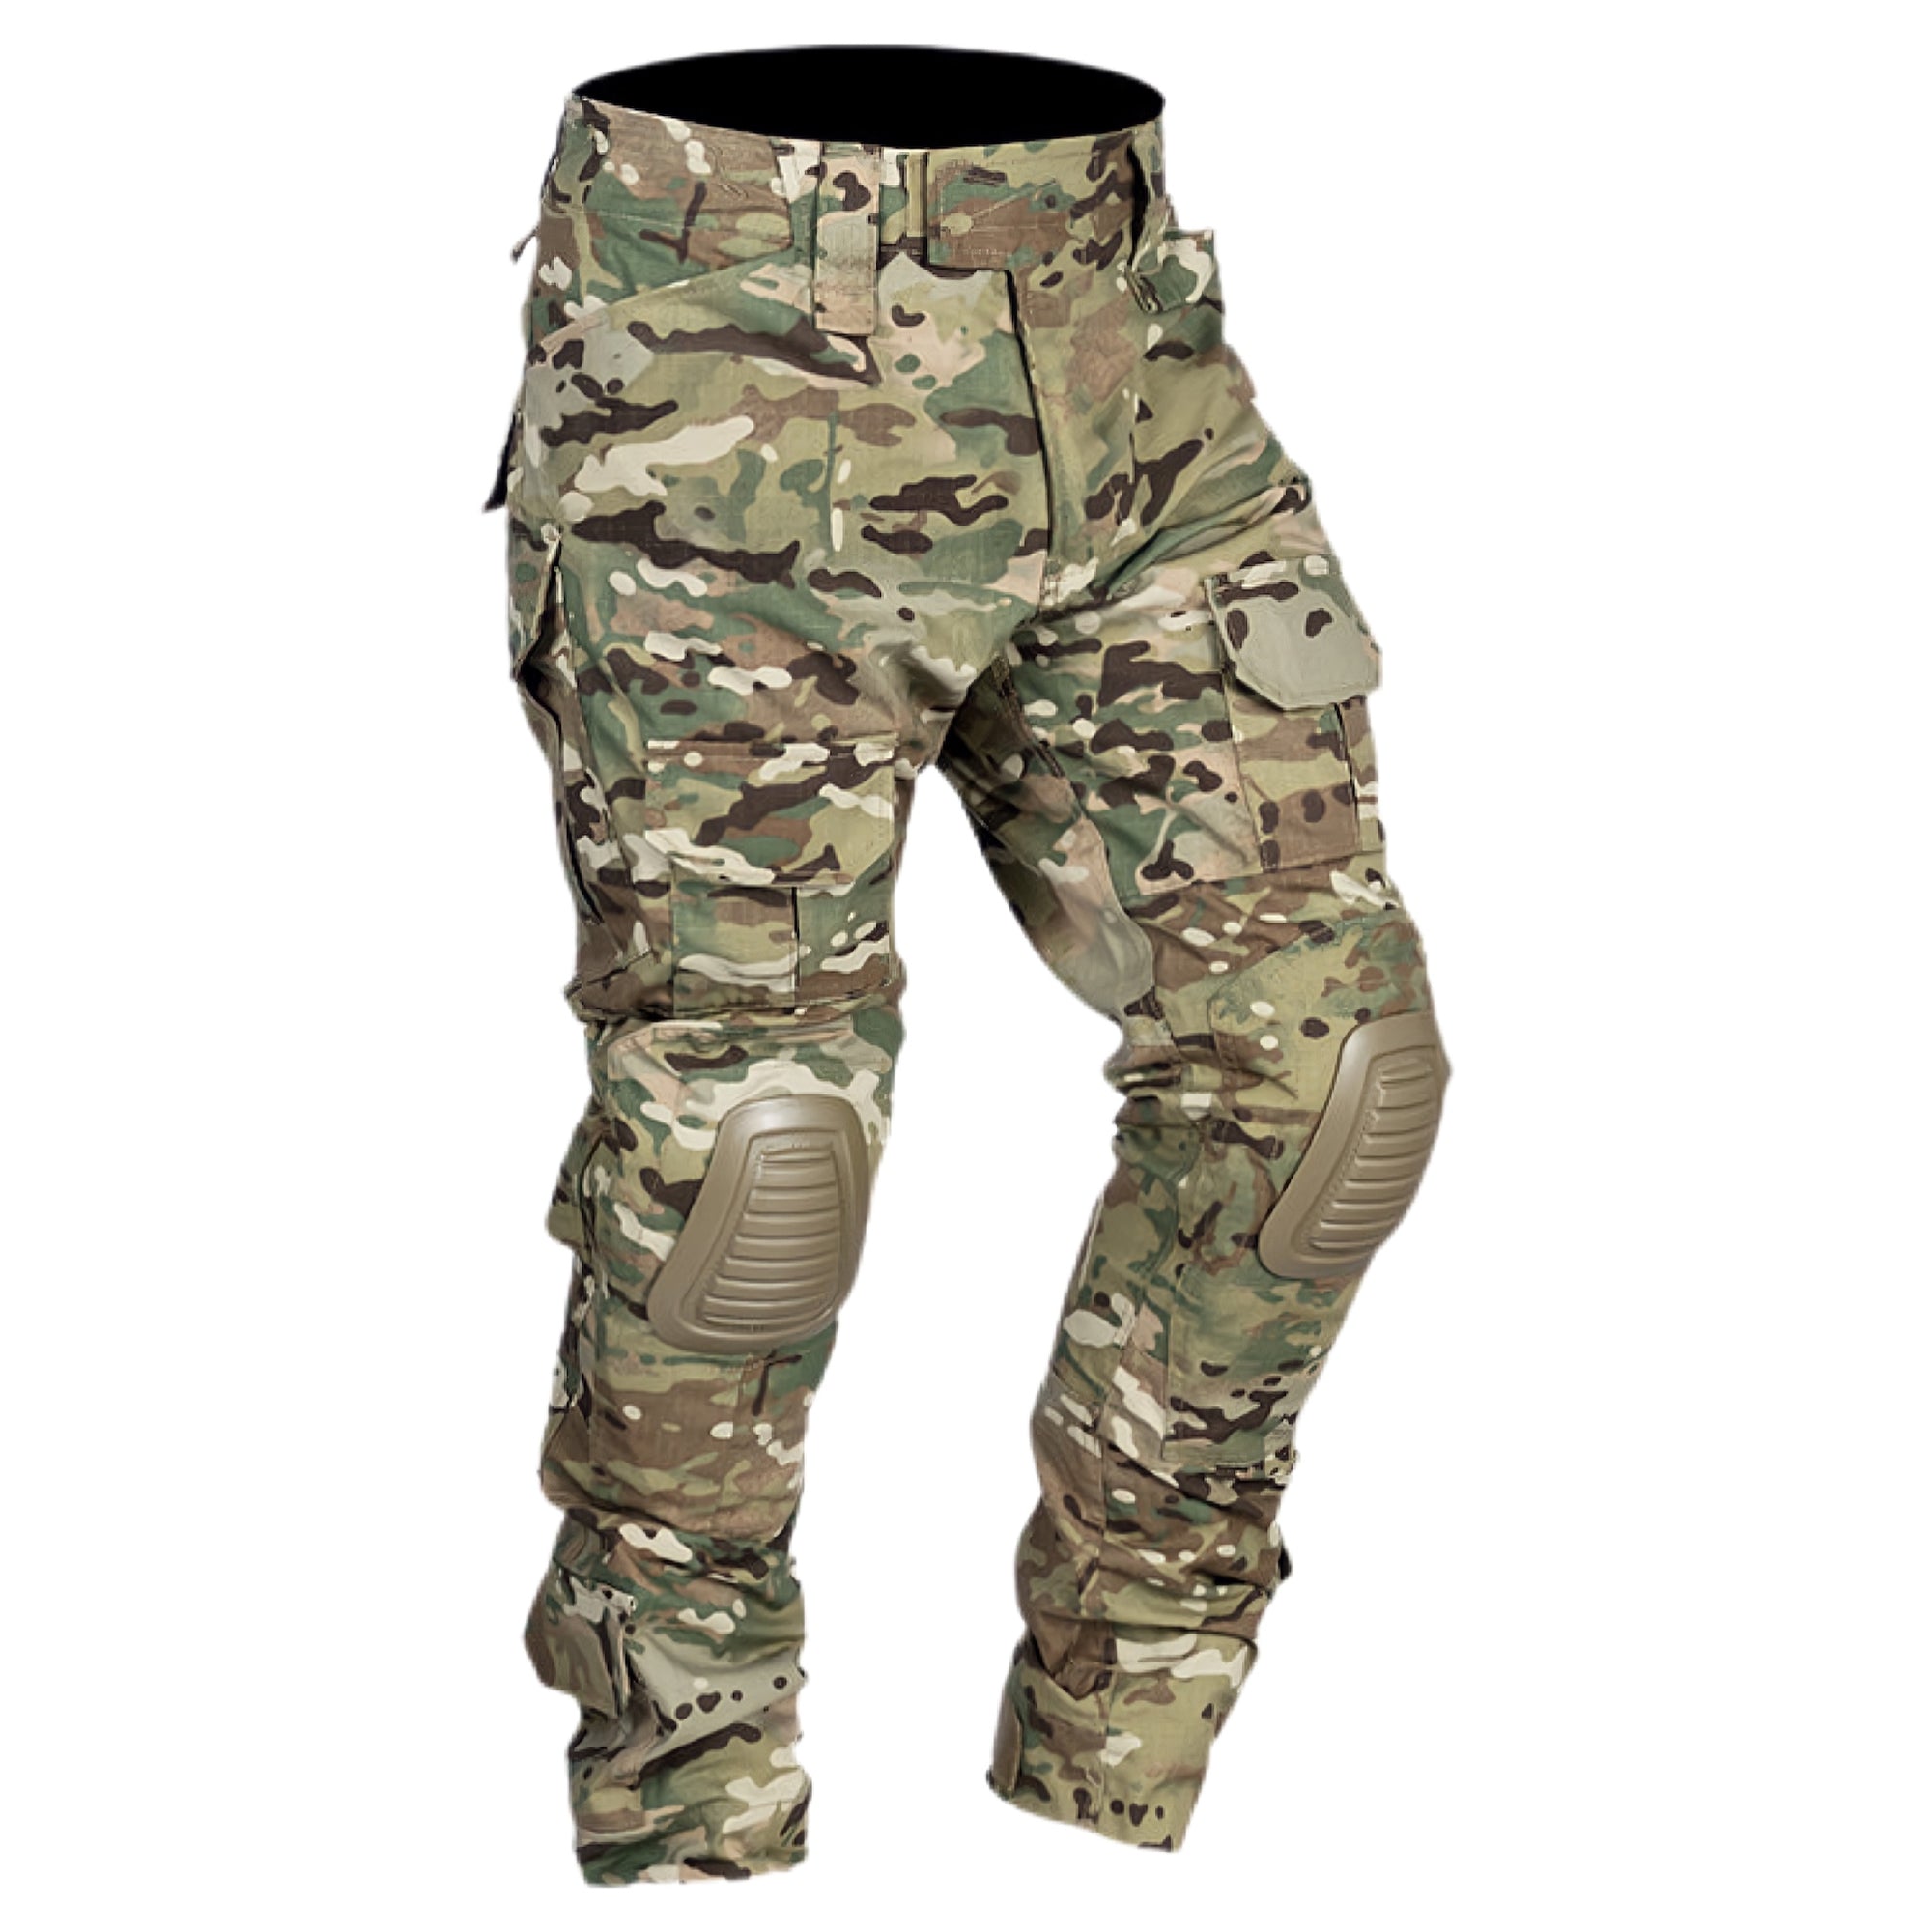 GEN2 Multicam Combat Tactical Pants With Knee Pads - FROGMANGLOBAL